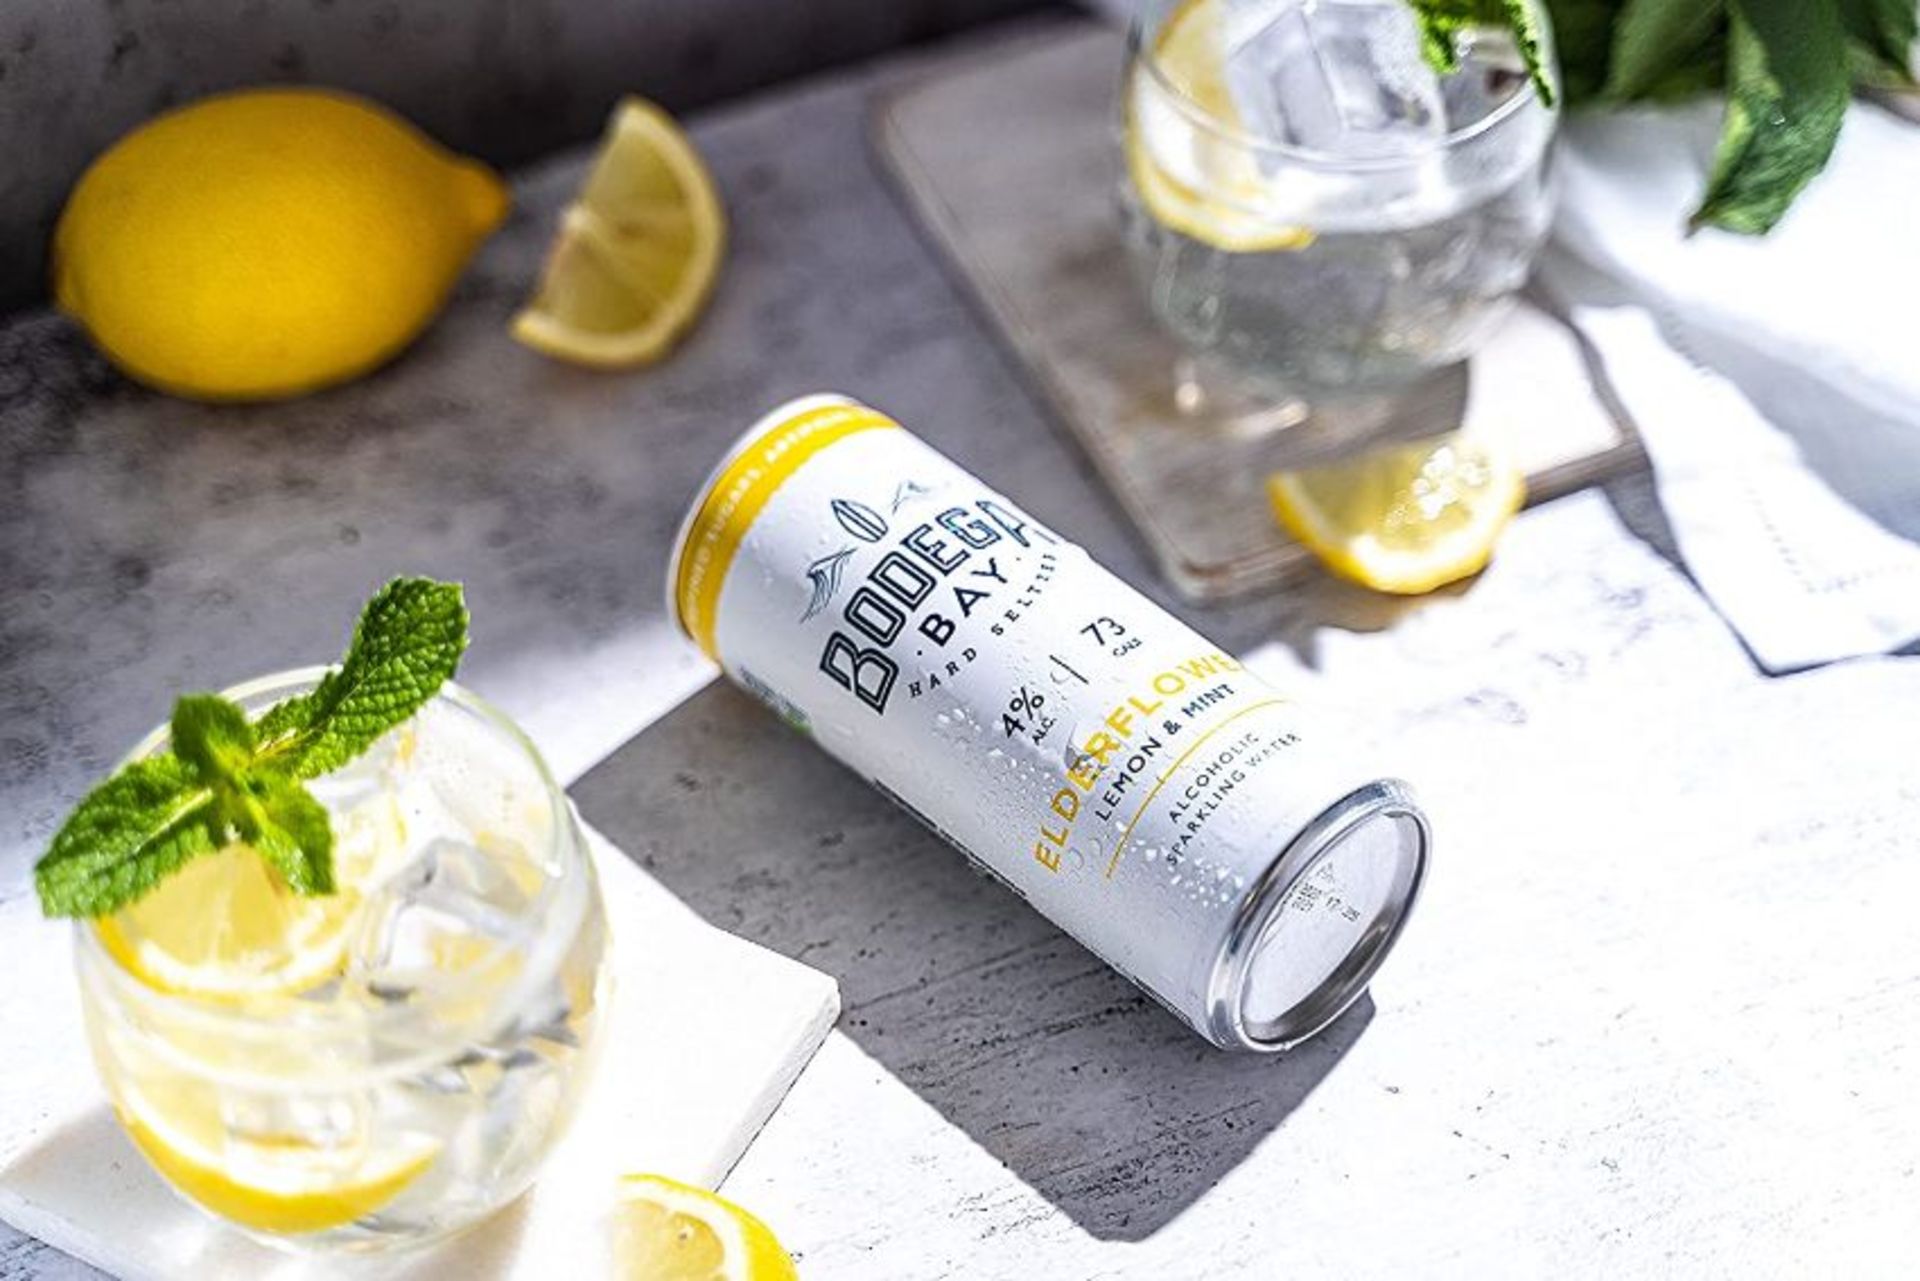 24 x Bodega Bay Hard Seltzer 250ml Alcoholic Sparkling Water Drinks - Elderflower Lemon & Mint - - Image 3 of 9